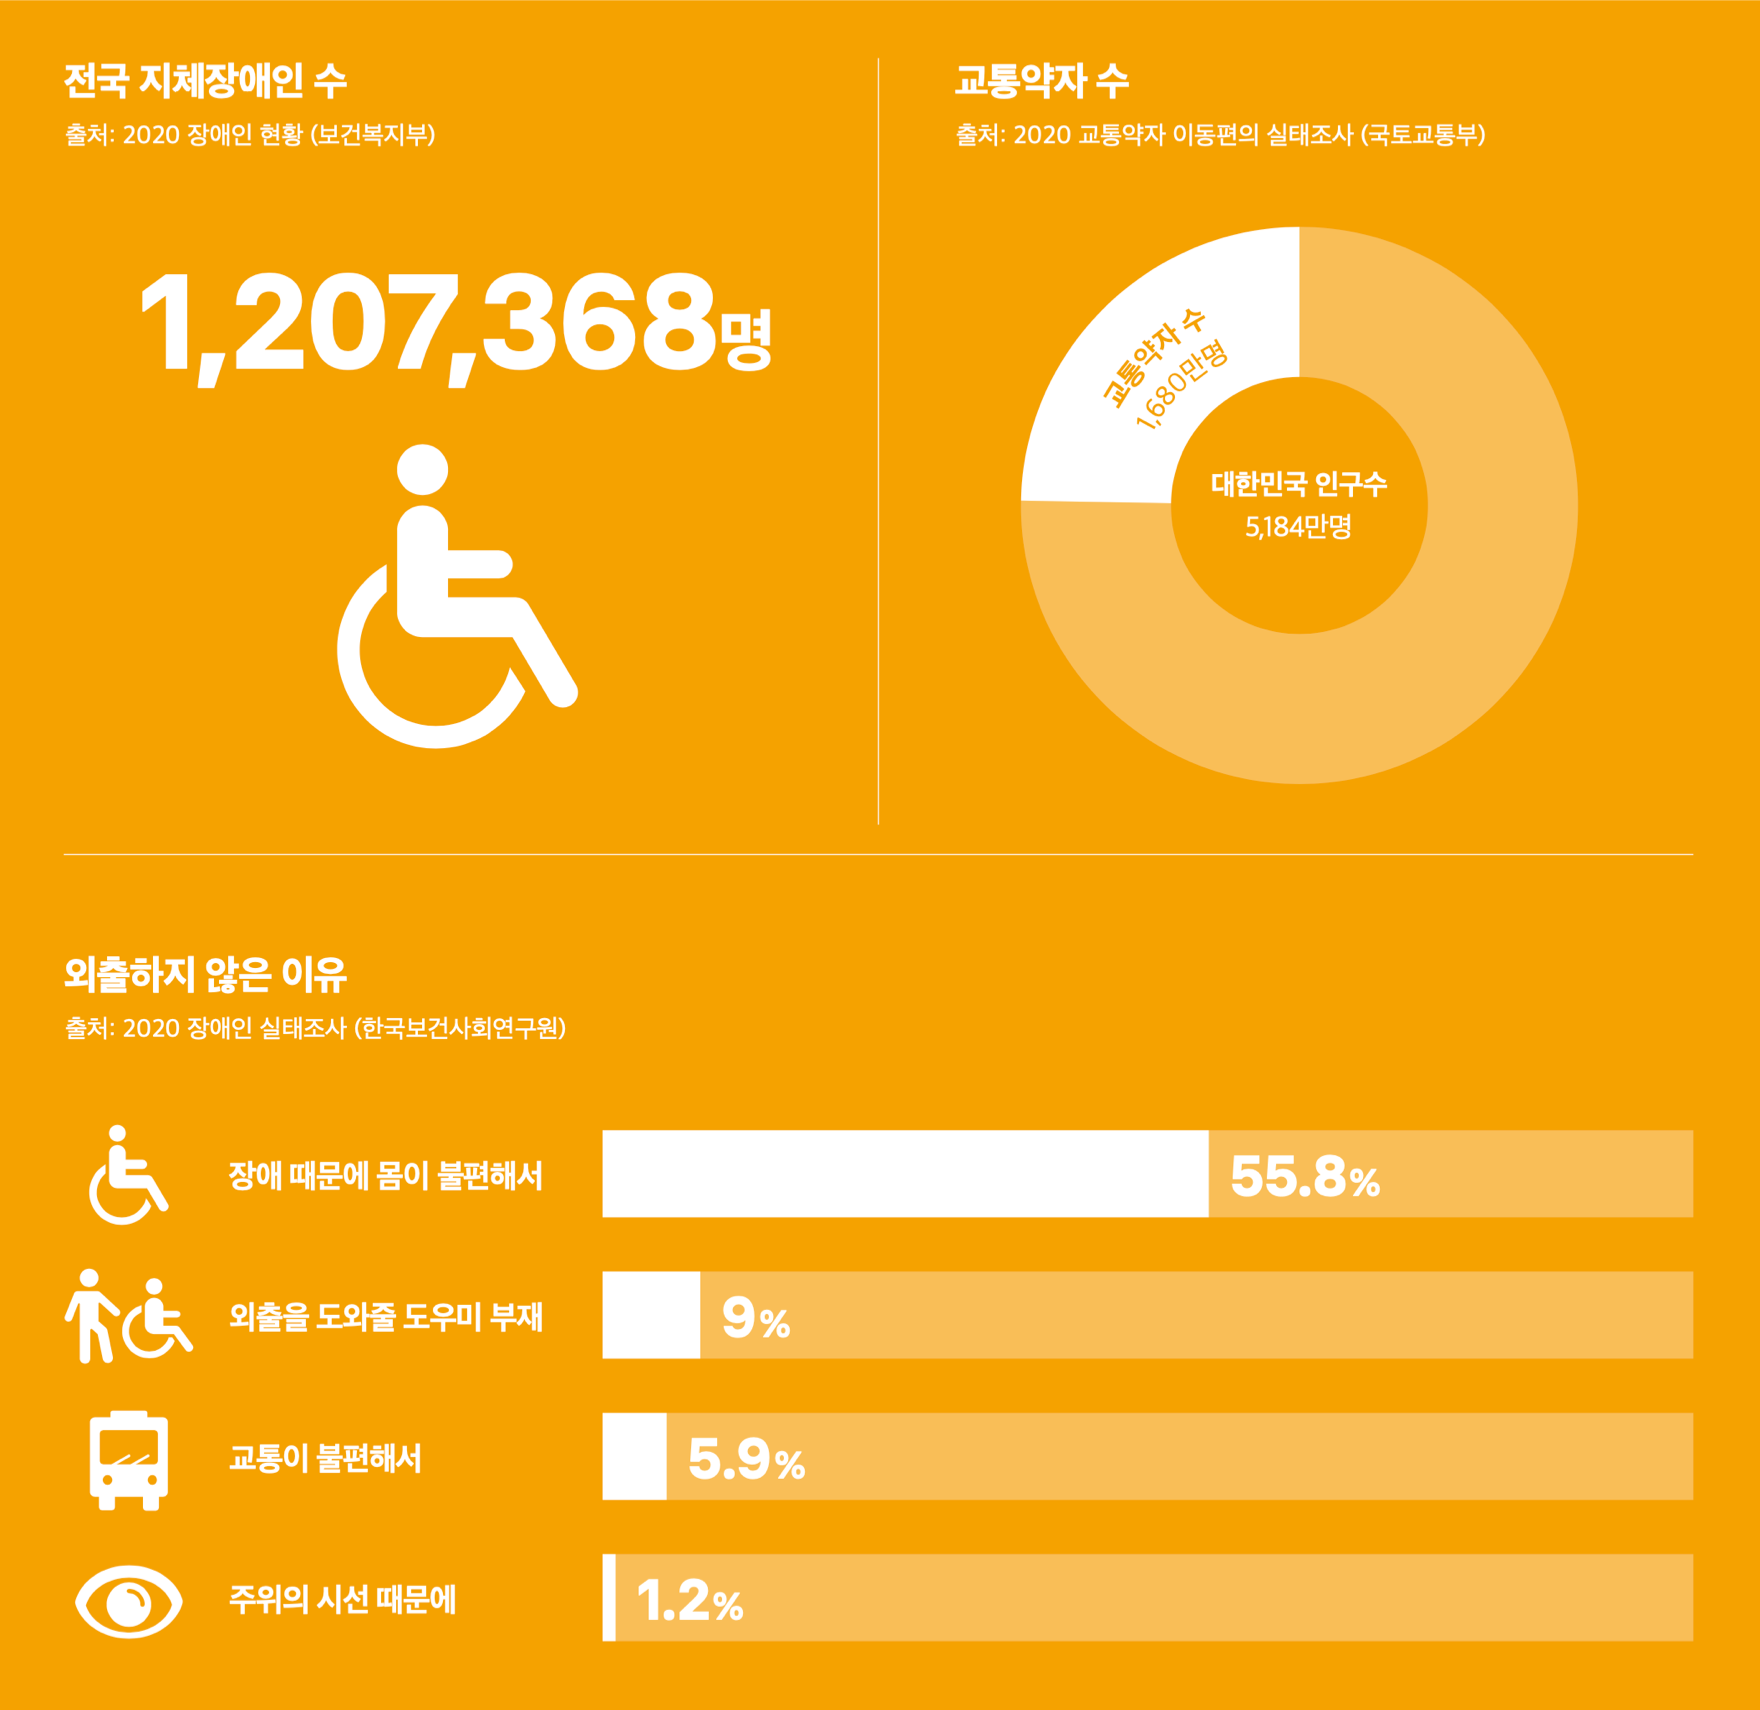 전국 지체장애인수, 교통약자수, 외출하지 않은 이유 통계 이미지